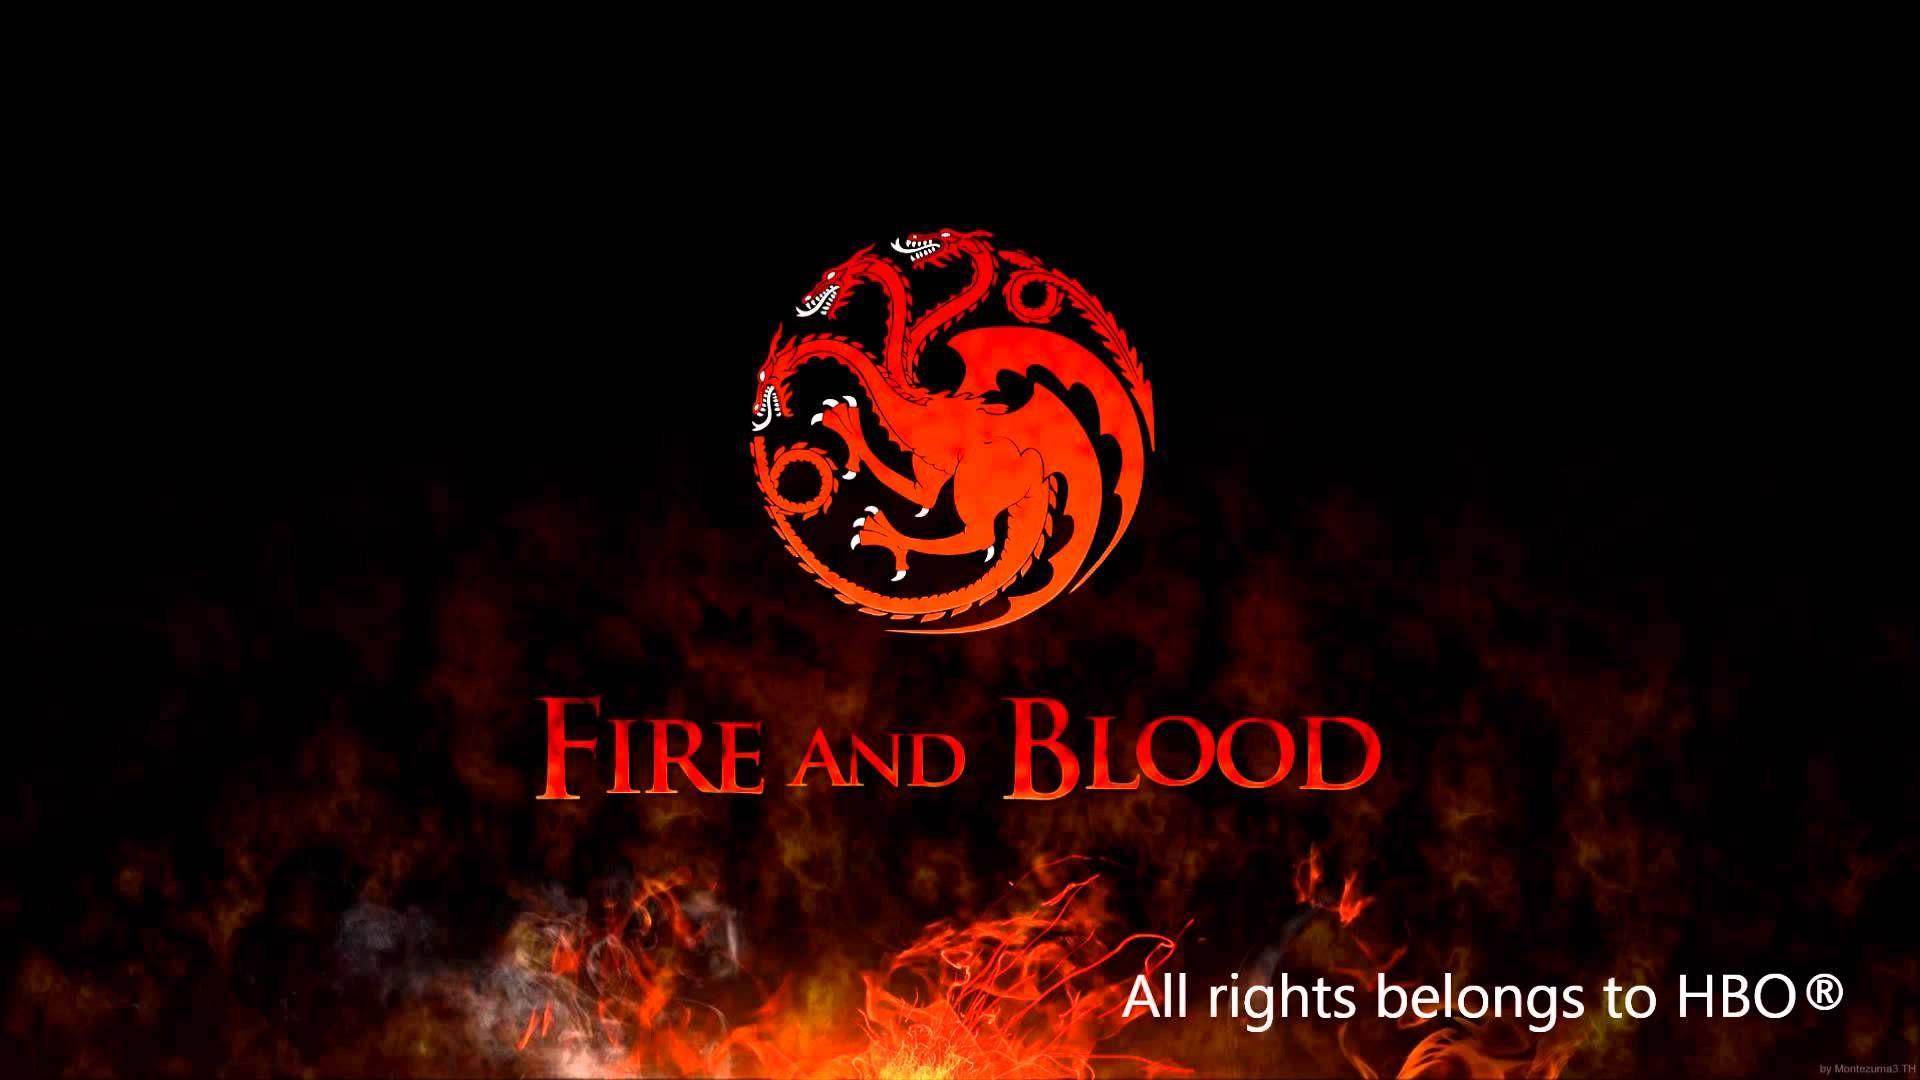 House Targaryen Wallpaper HD. Blood wallpaper, Got memes